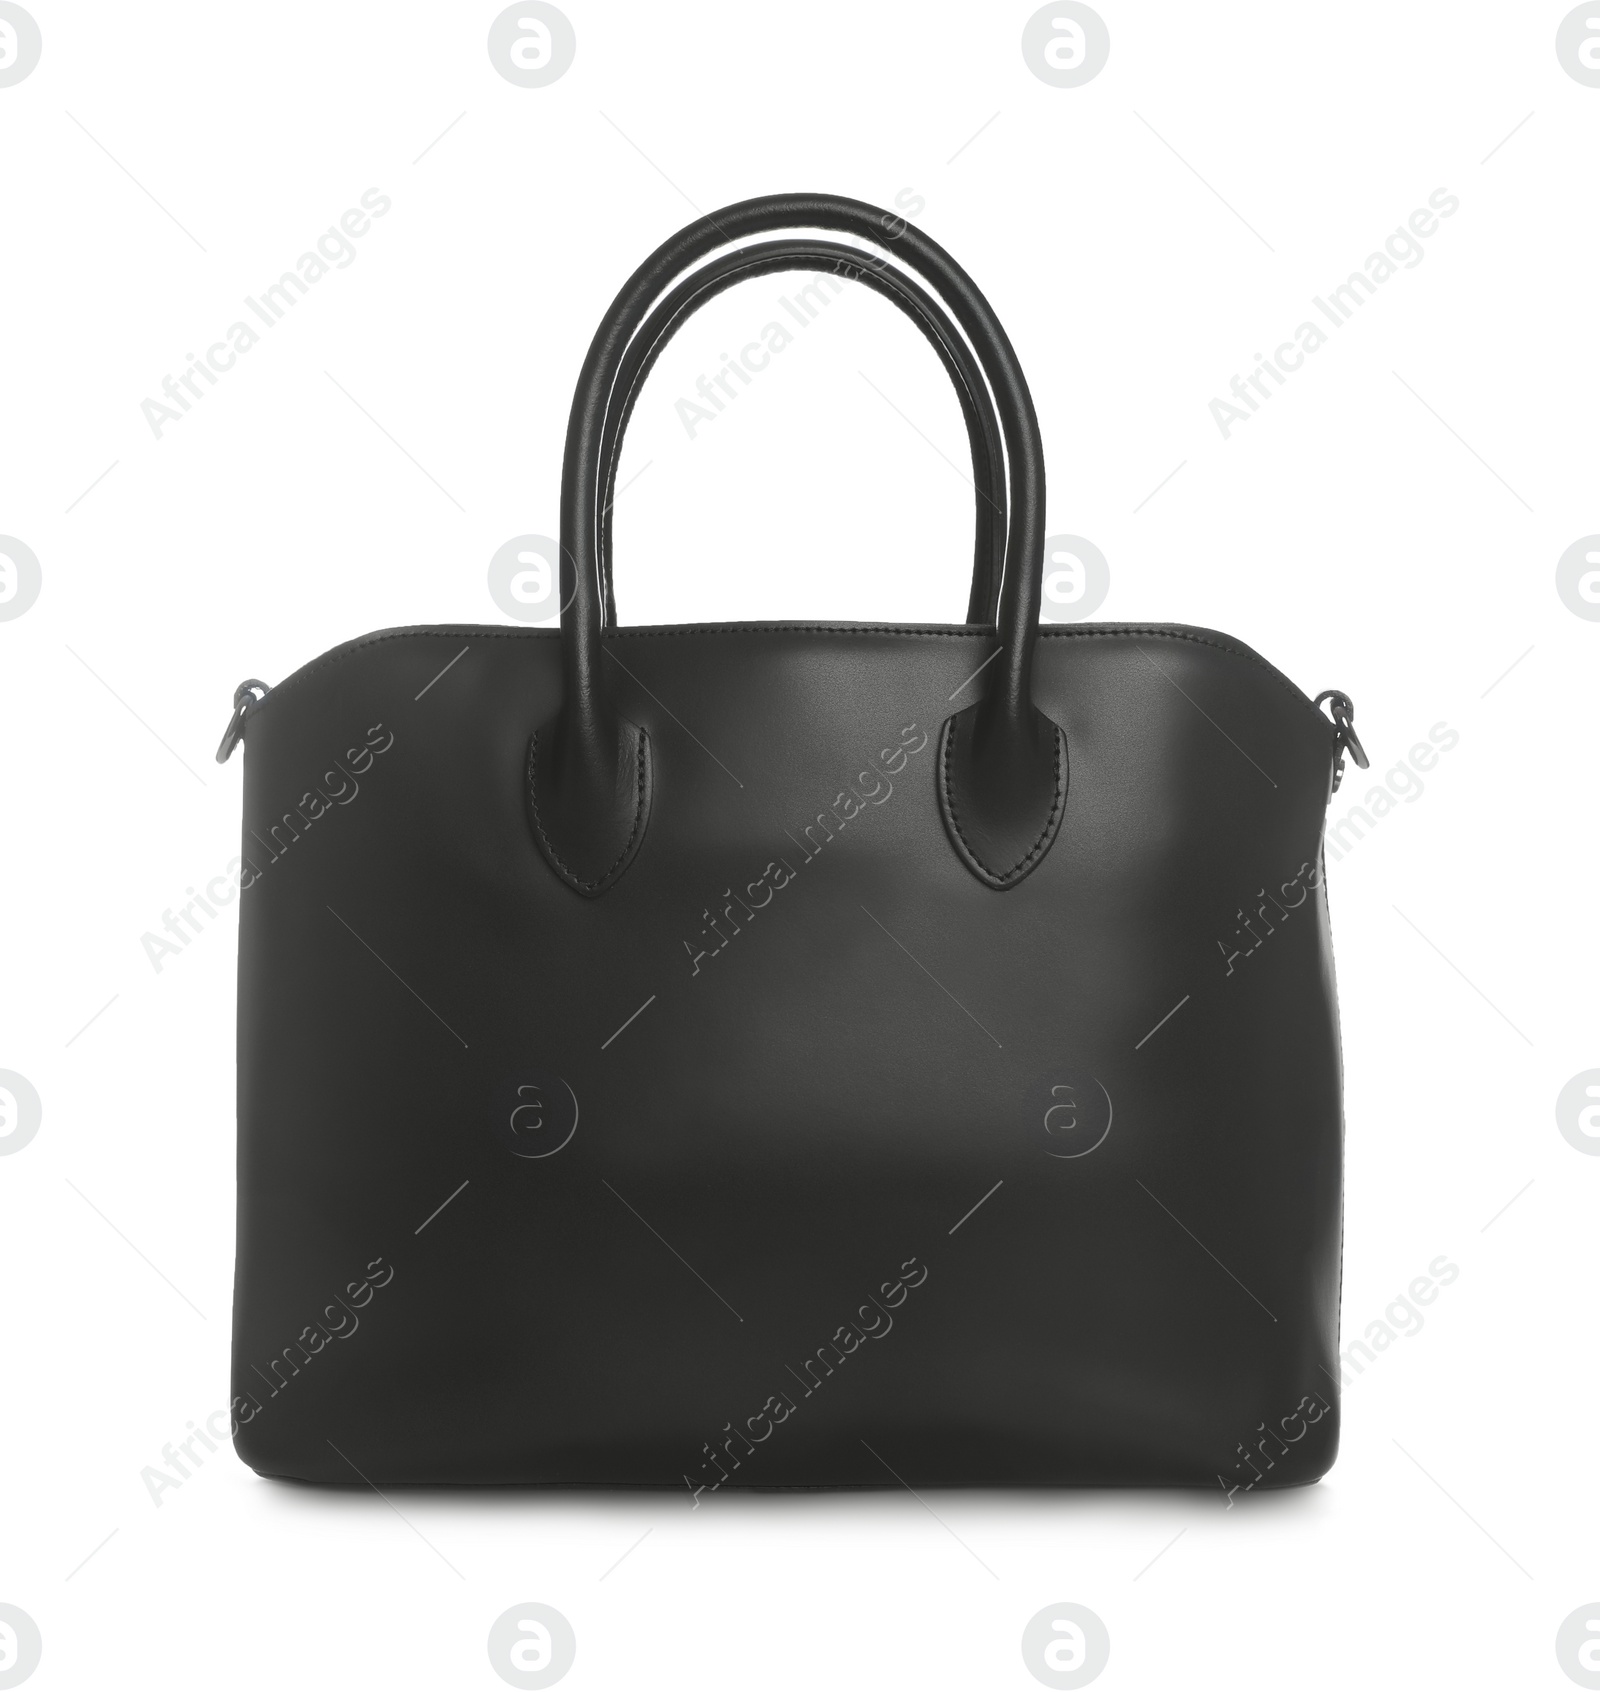 Photo of Stylish black woman's bag isolated on white